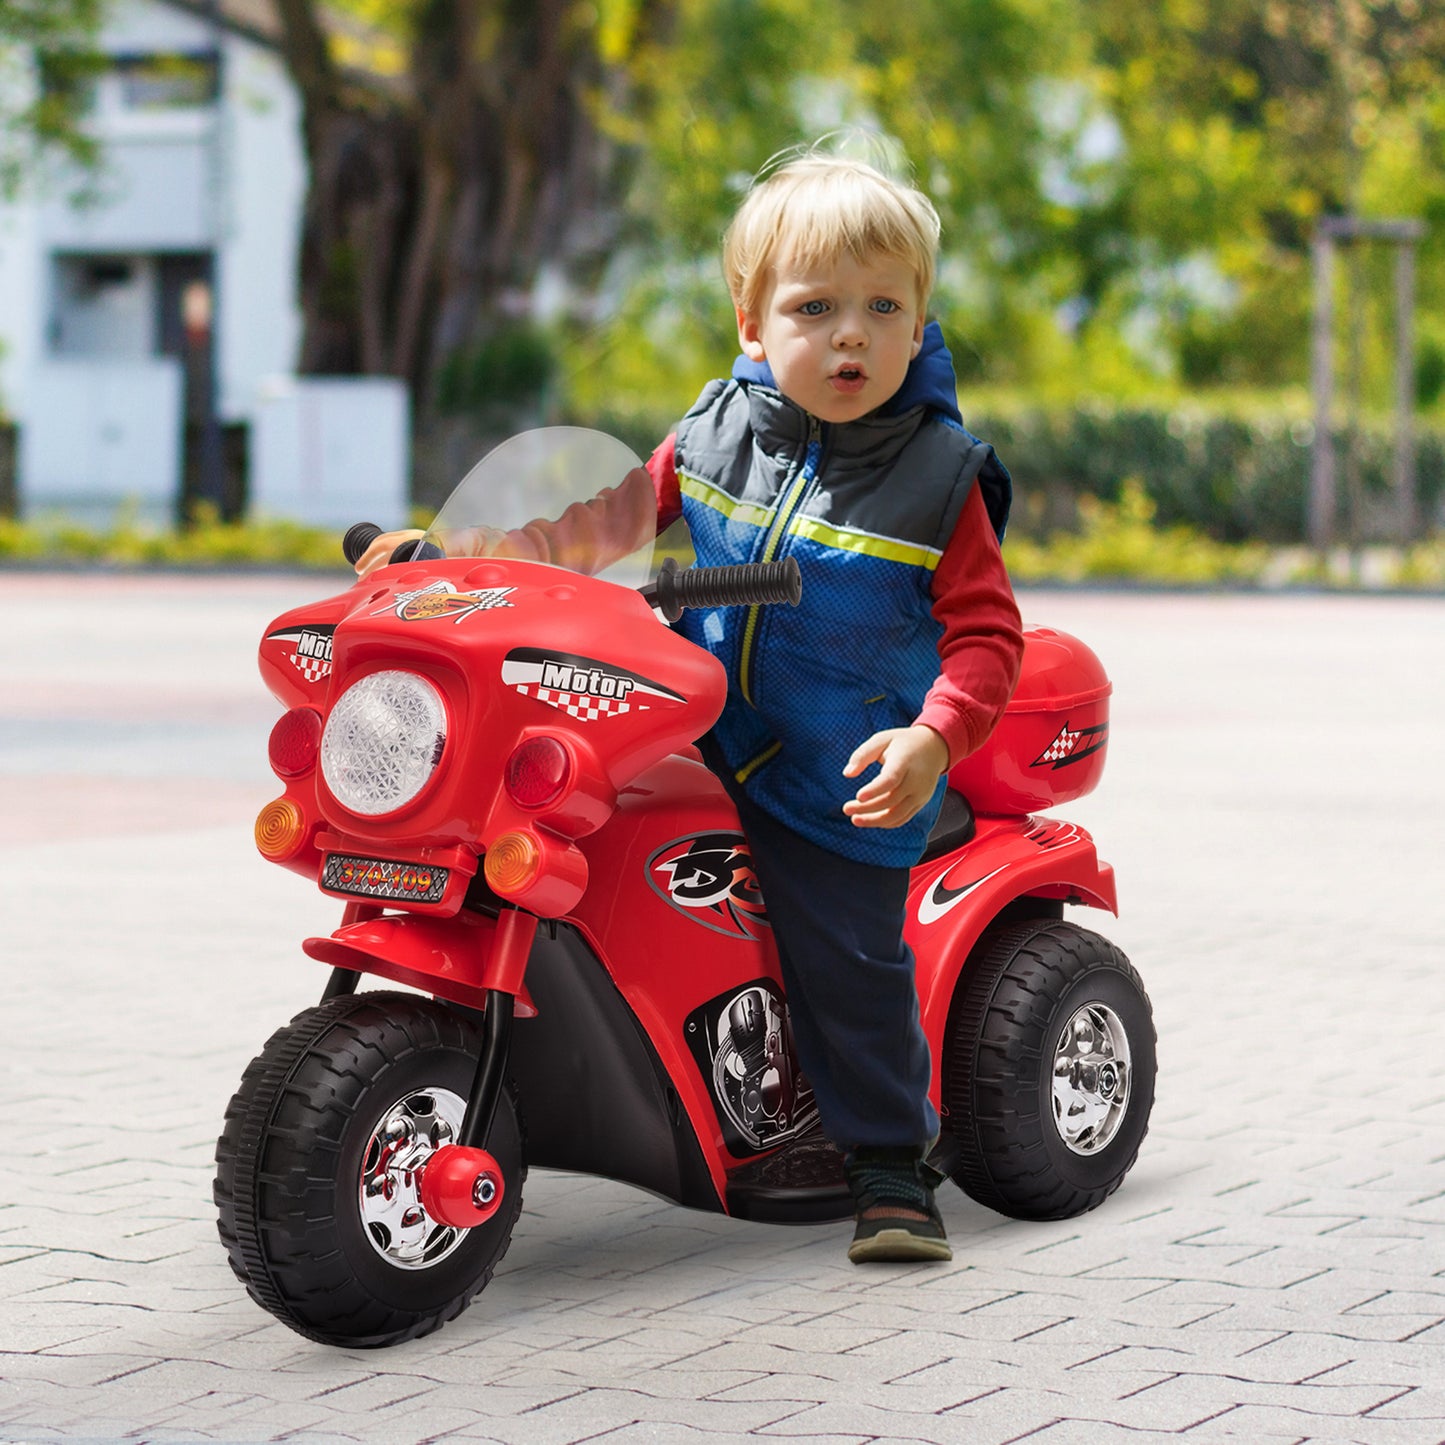 HOMCOM Moto Eléctrica para Niños de 18-36 Meses Moto de Batería 6V Motocicleta Infantil con 3 Ruedas Música Bocina Faros Baúl 80x35x52 cm Rojo